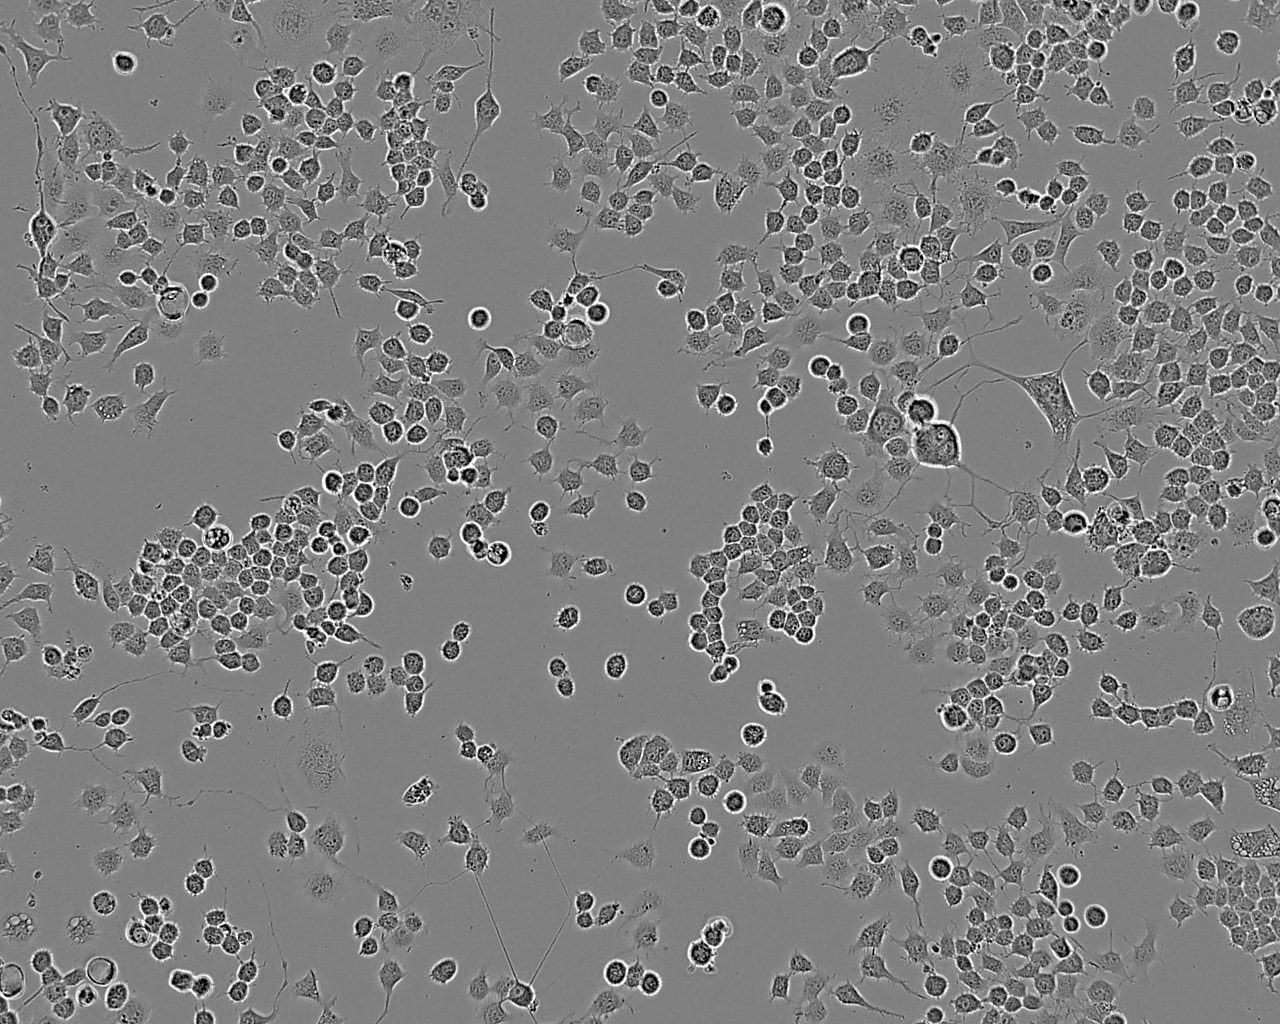 MDA-MB-330 Cell:人浸润性小叶性乳腺癌细胞系